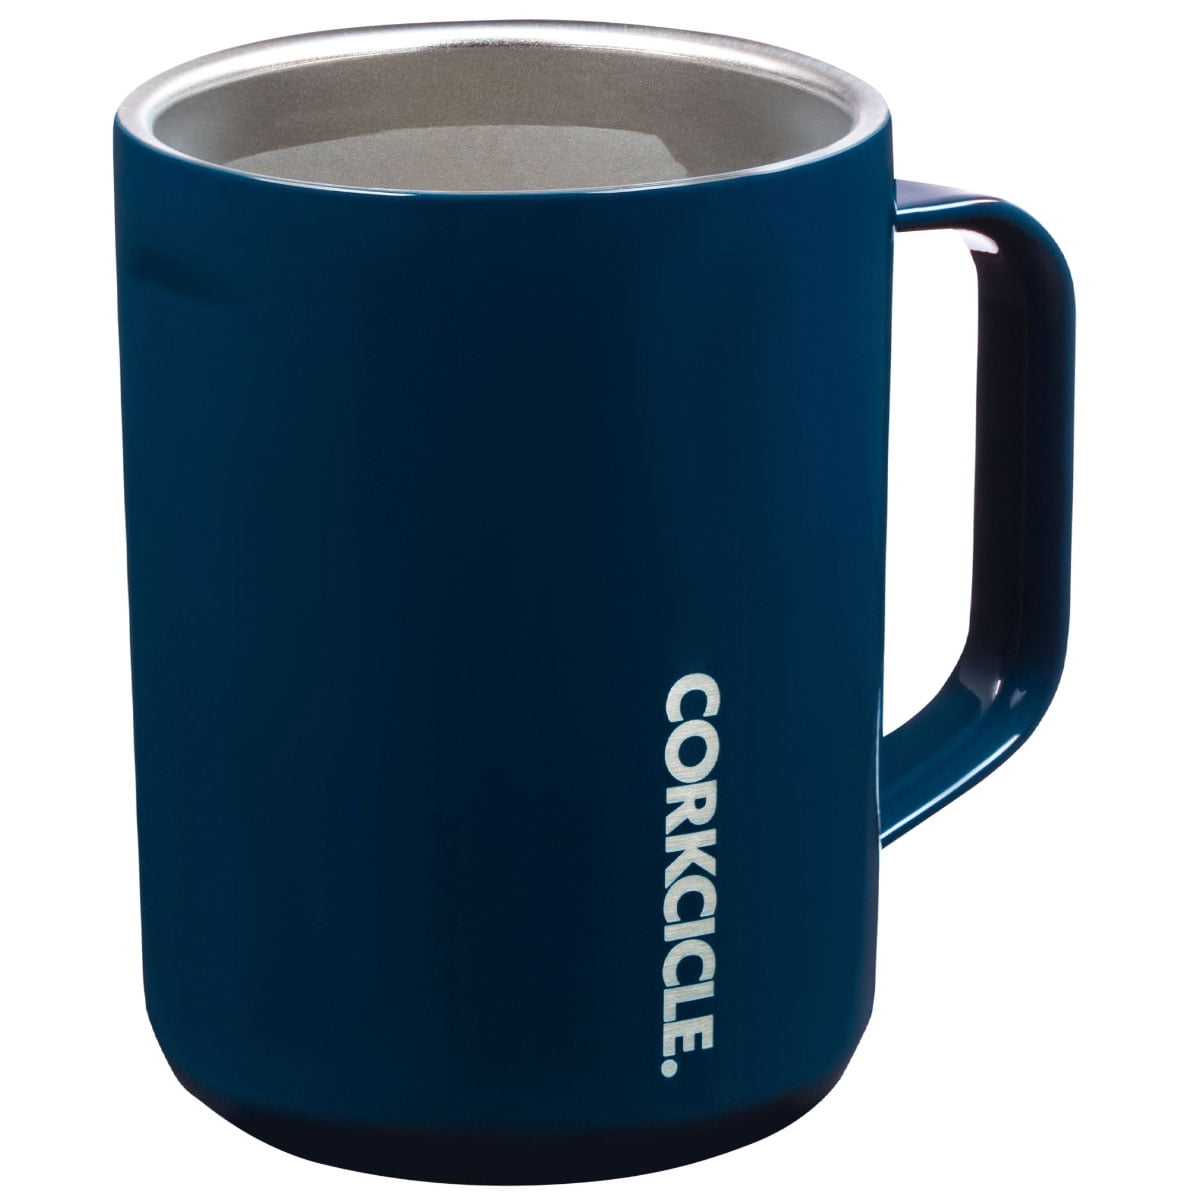 Corkcicle Coffee Mug - 16 oz, Nebula